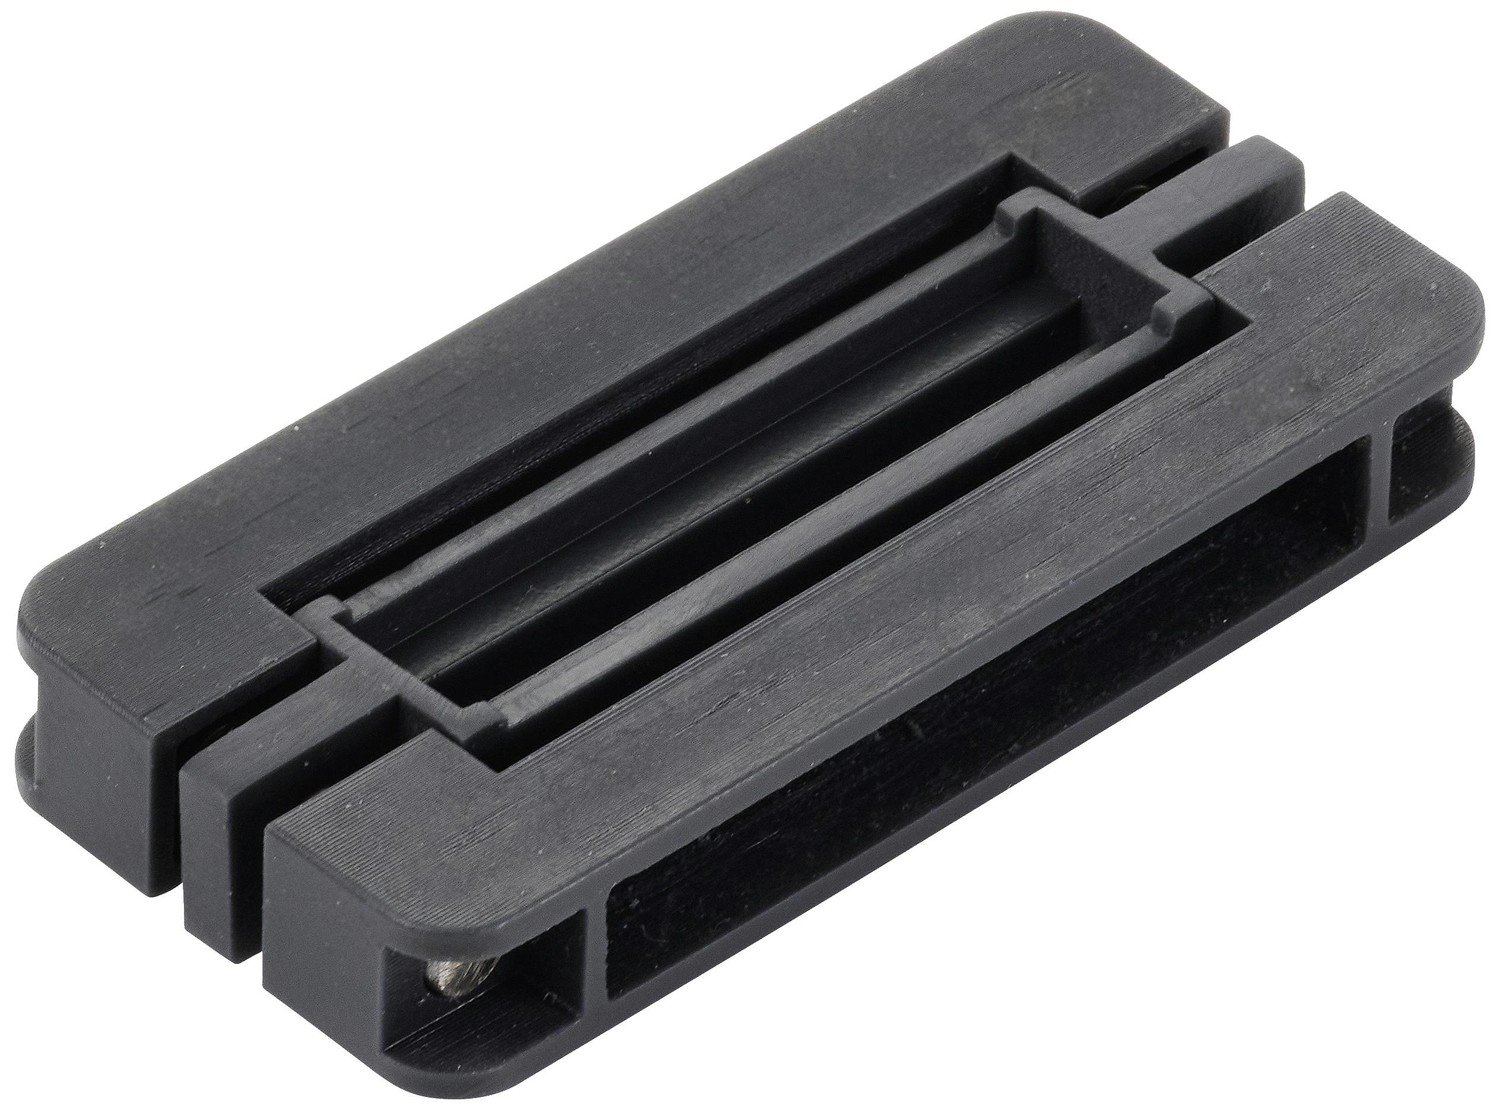 TRU COMPONENTS nástroj pro rovnání pinů 1 ks TC-10494336 Vhodné pro velikost rastru: 7.62 mm, 15.24 mm Vhodné pro kryt (polovodiče): DIL , DIP